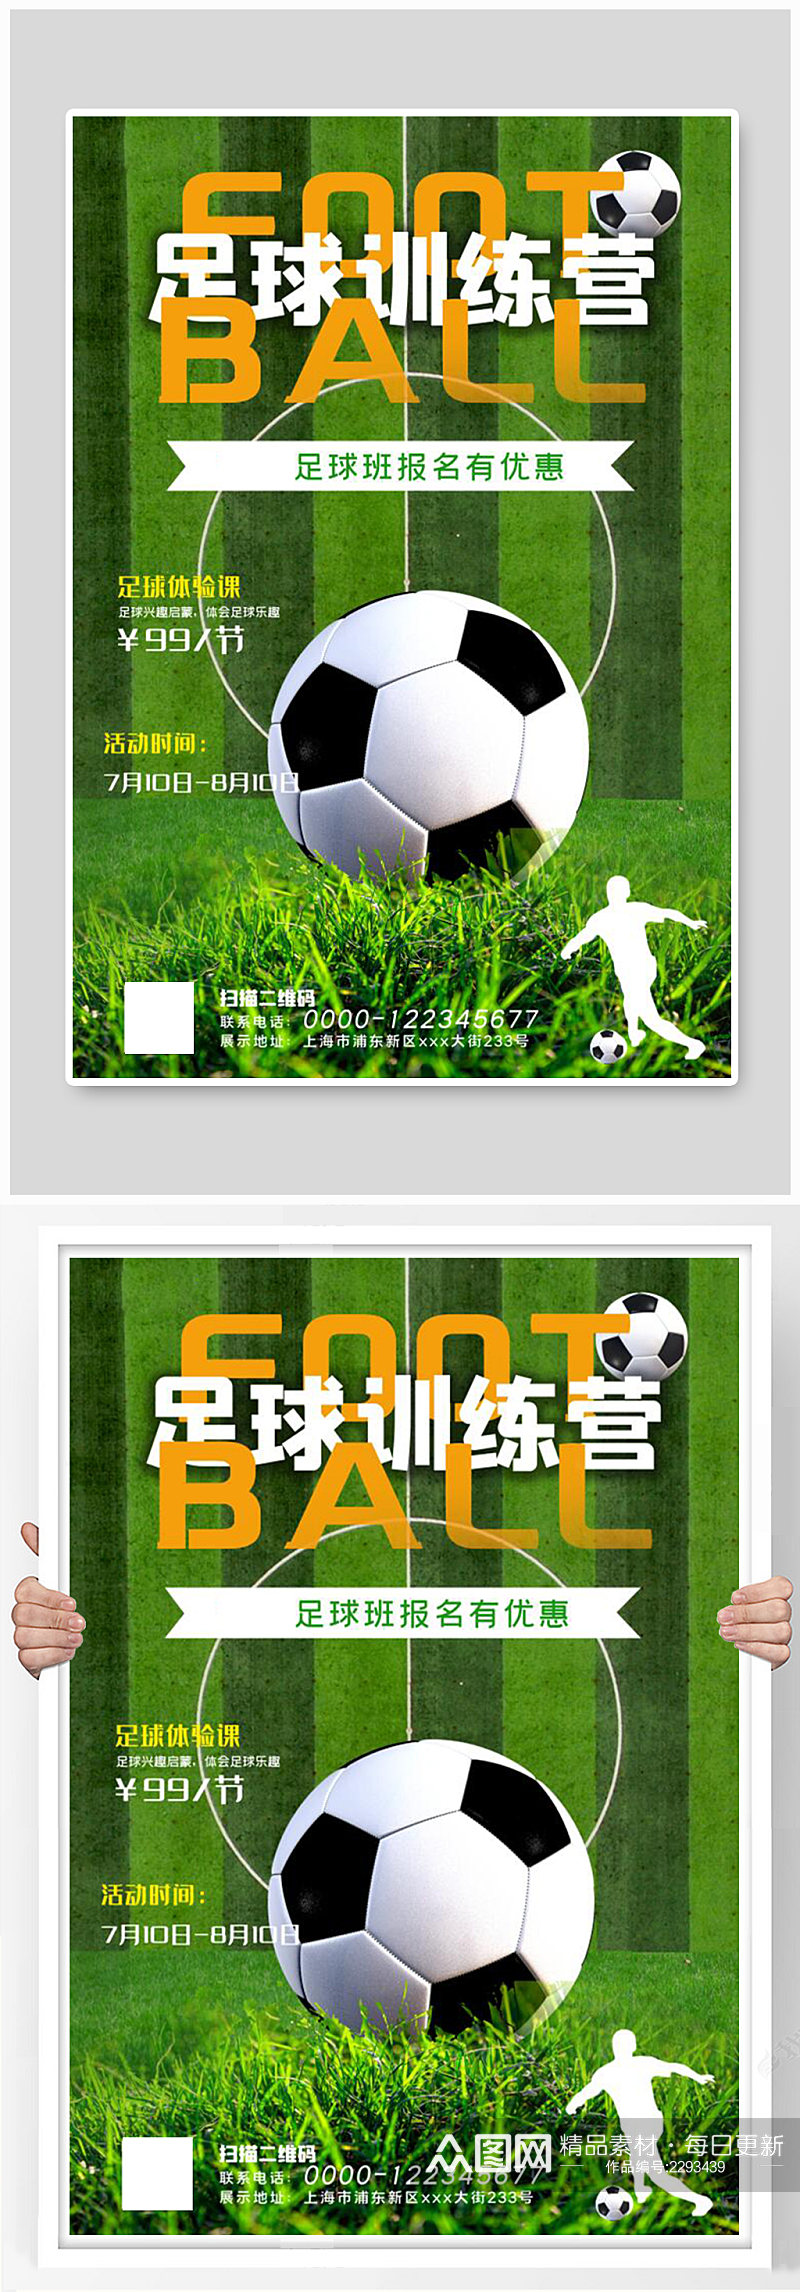 少儿足球训练营招生足球绿色简约海报素材